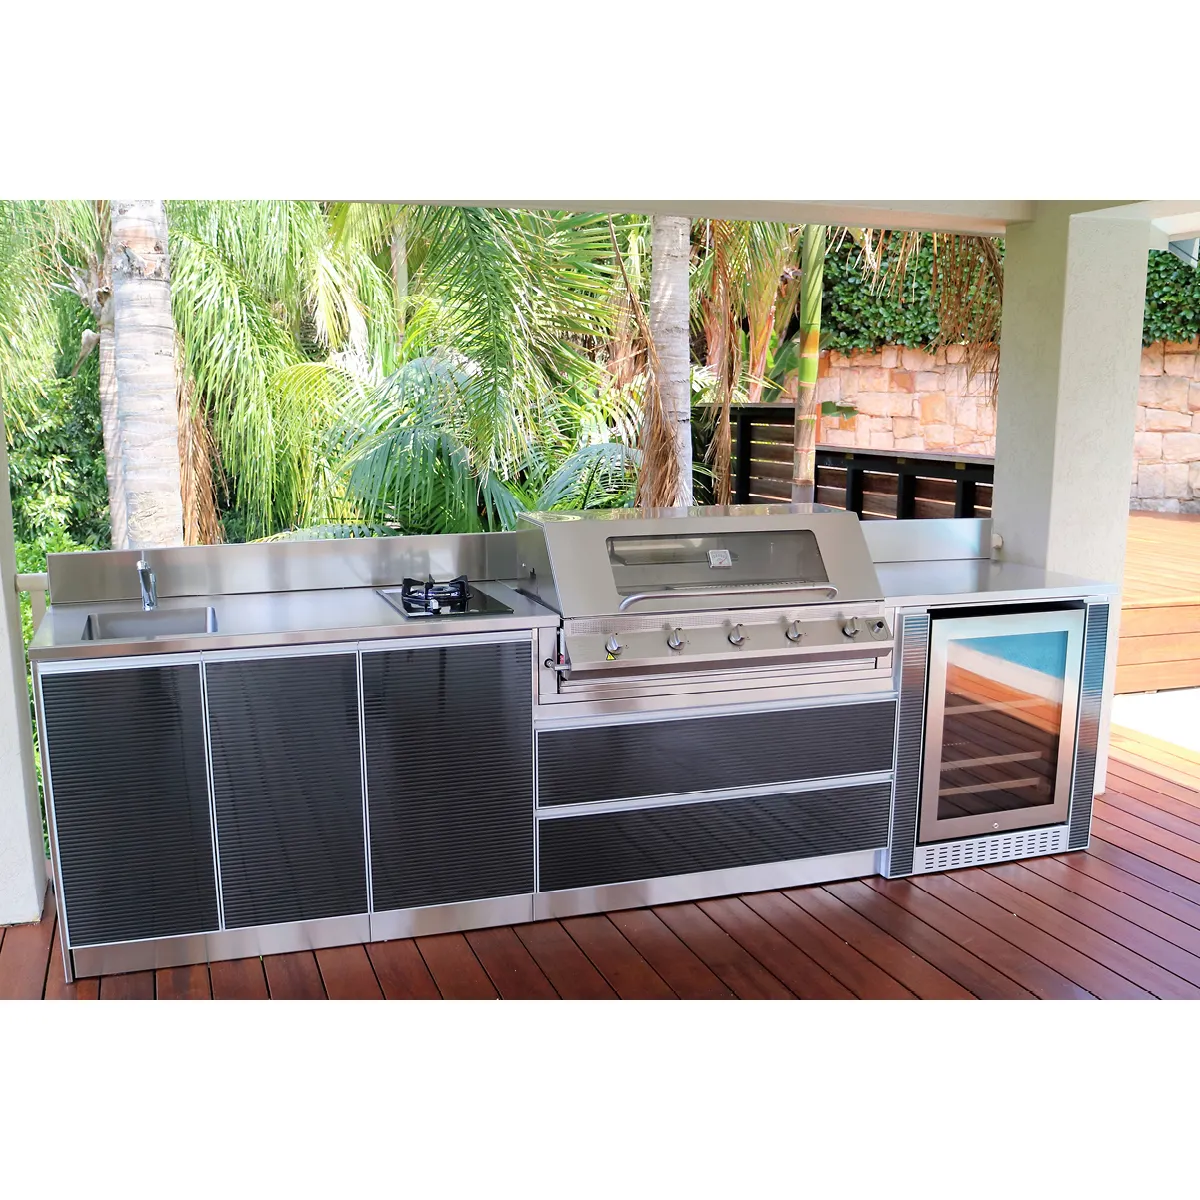 Griglia da cucina per esterni BBQ Island con frigorifero per casa e giardino in acciaio inossidabile 304